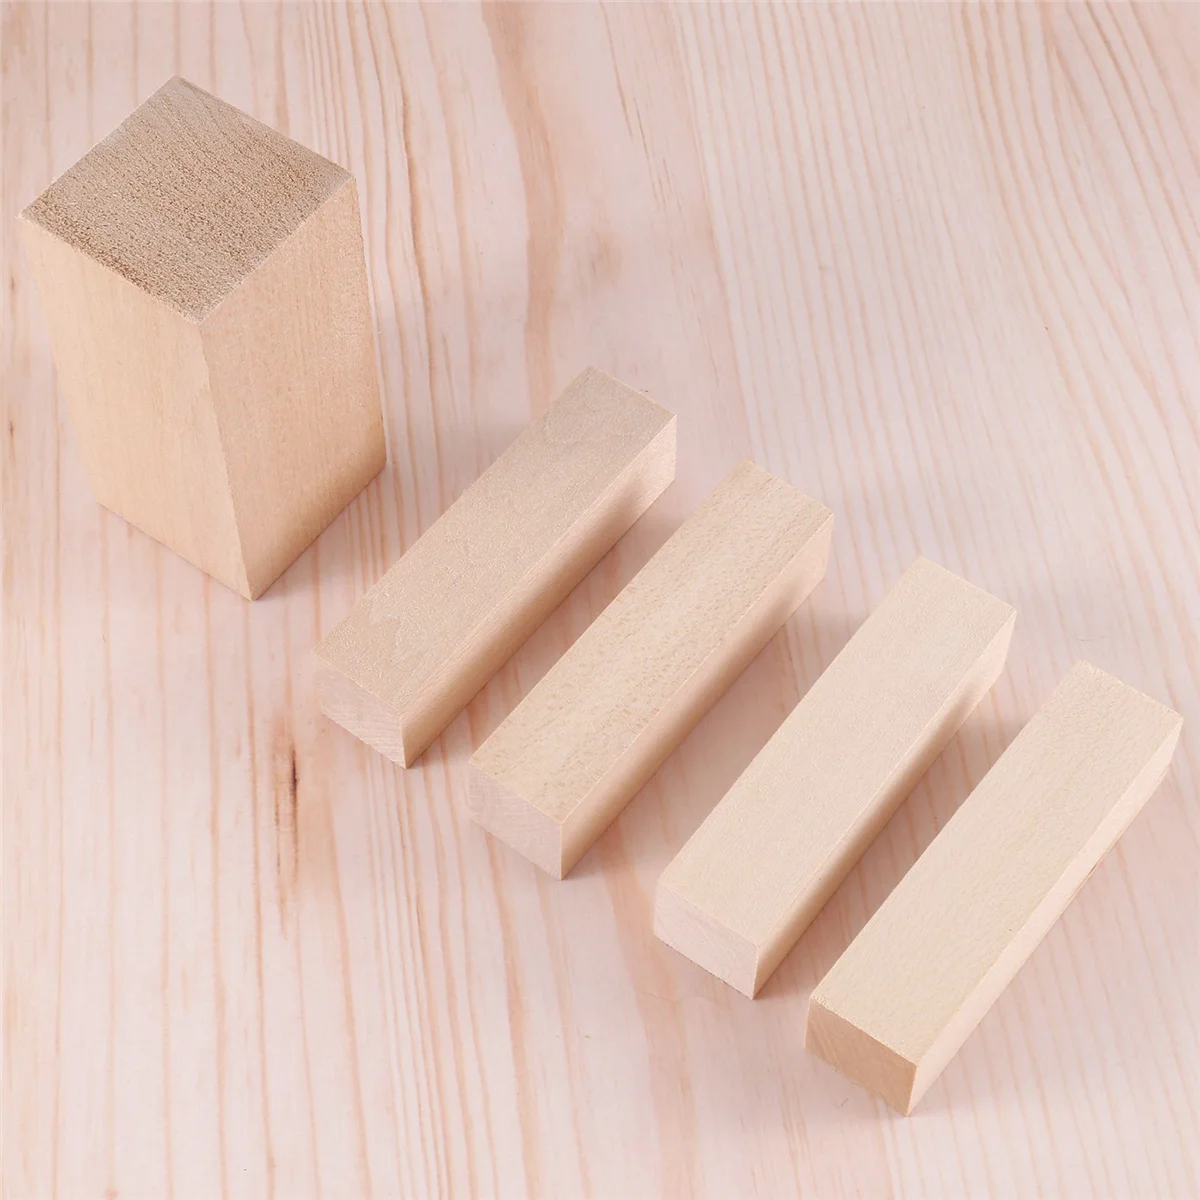 5 шт. Резные деревянные блоки Строгальные деревянные блоки Блоки для резьбы по липе Незаконченный набор из мягкого дерева для начинающих резчиков